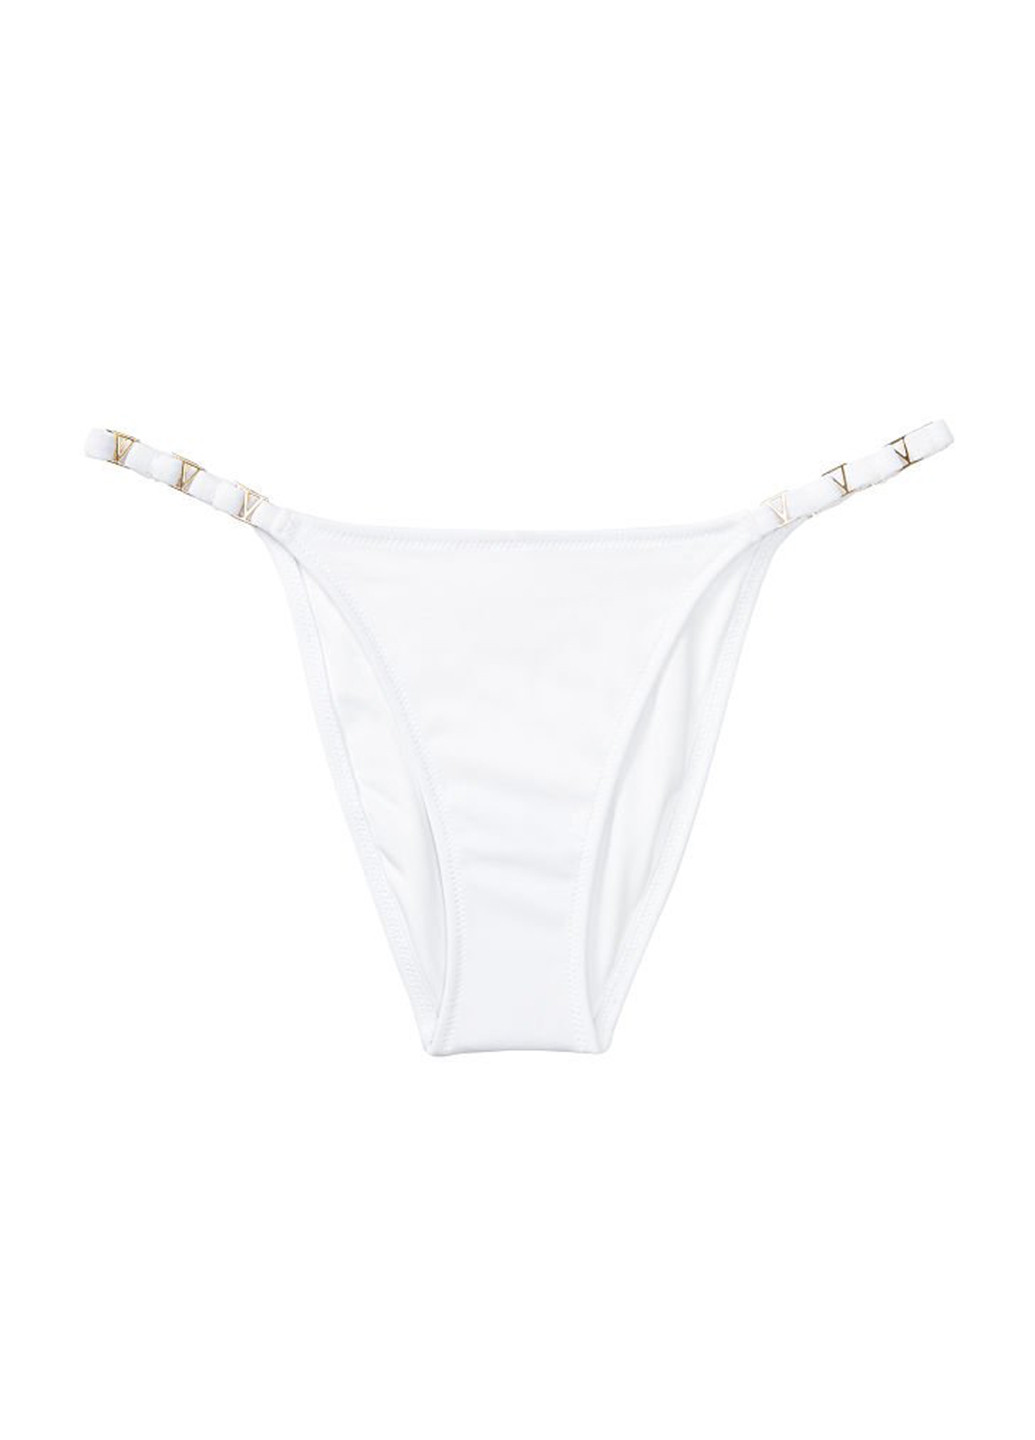 Белый летний купальник (лиф, трусики) раздельный Victoria's Secret